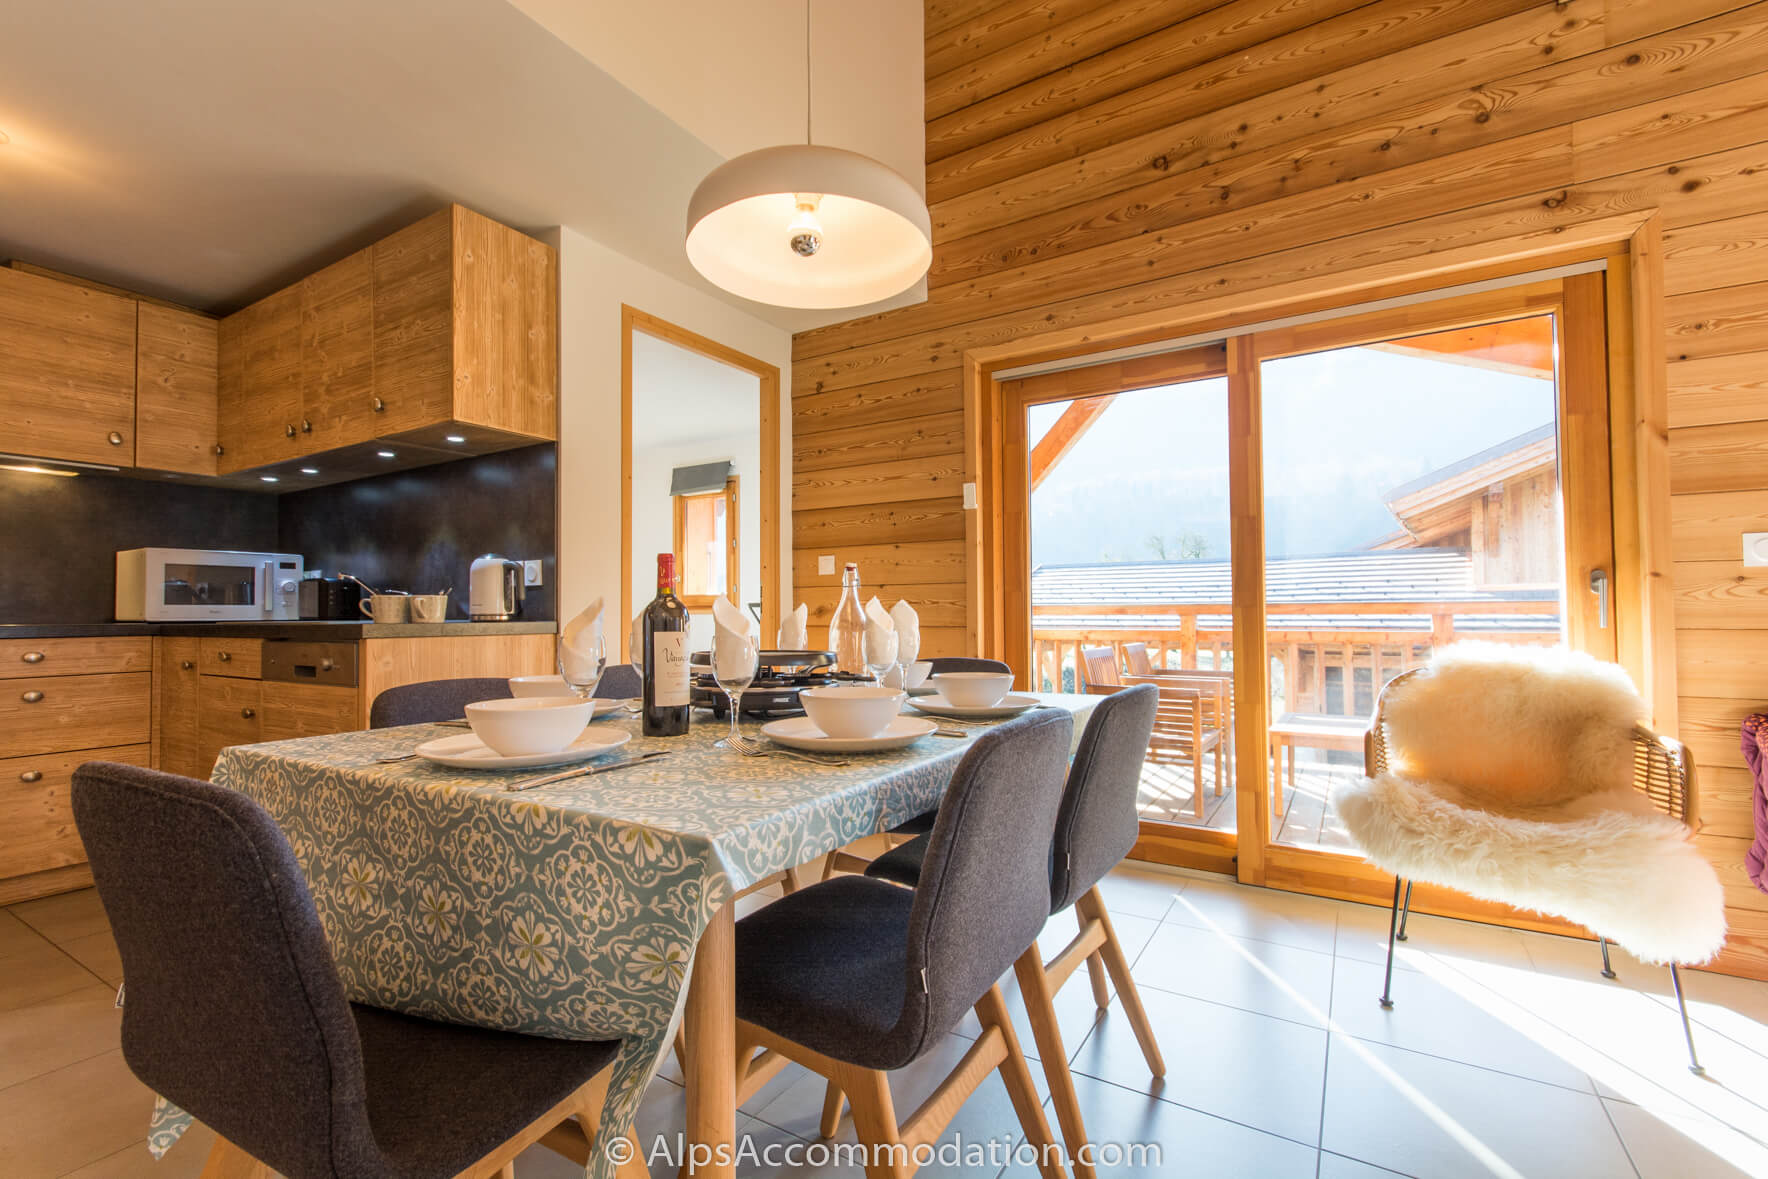 Appartement La Bottière Samoëns - La table à manger peut accueillir jusqu'à 8 personnes confortablement